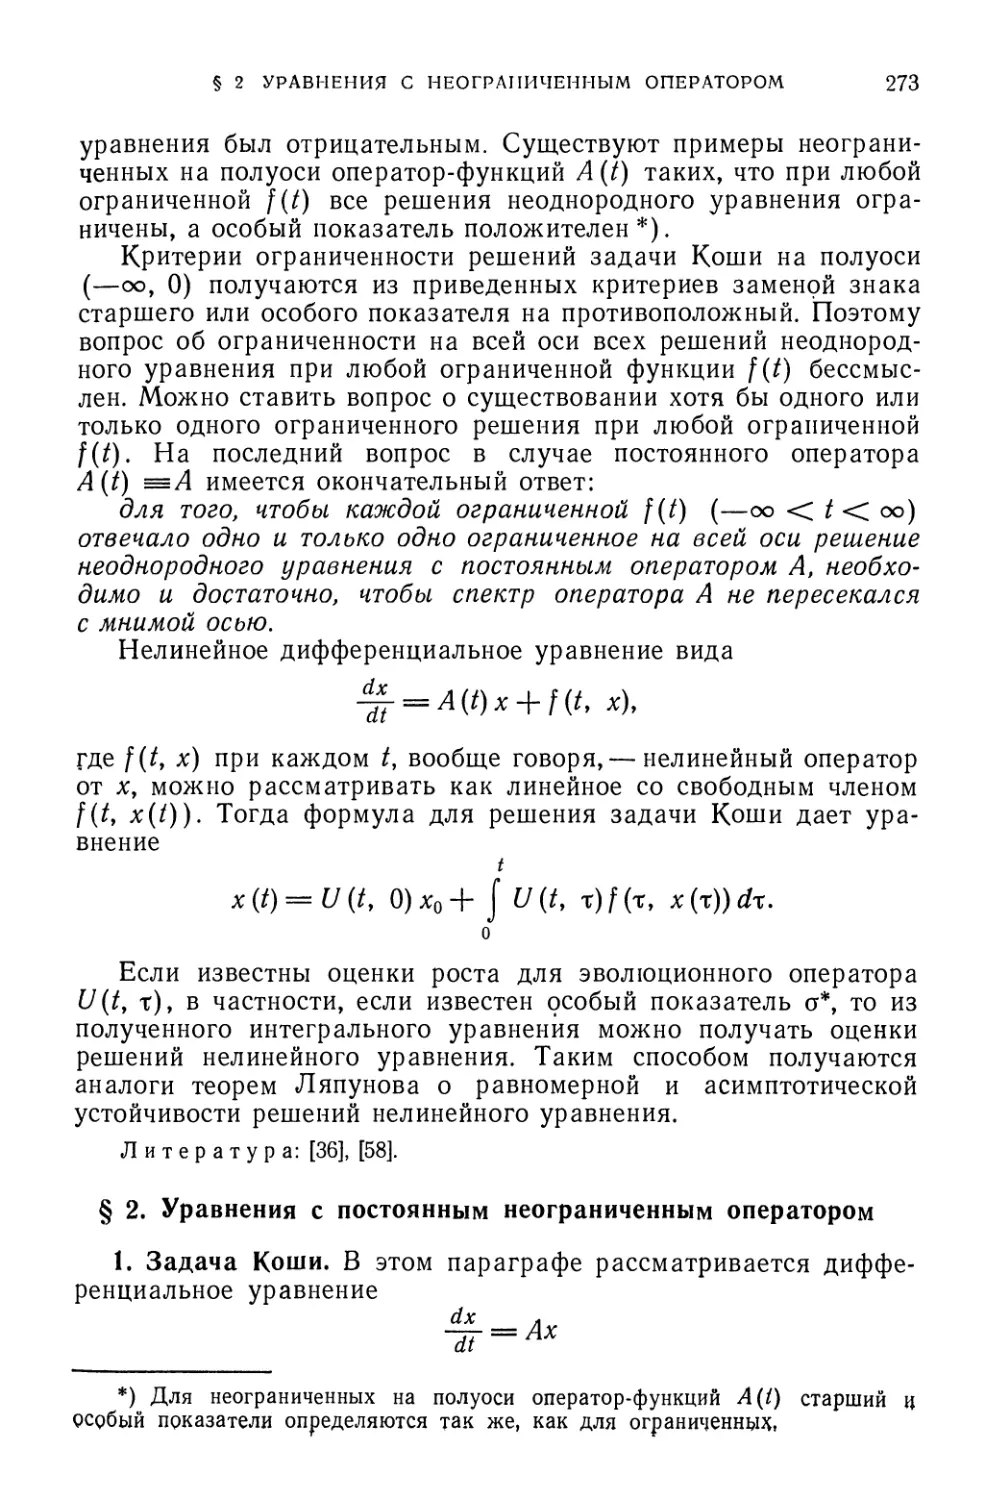 § 2. Уравнения с постоянным неограниченным оператором